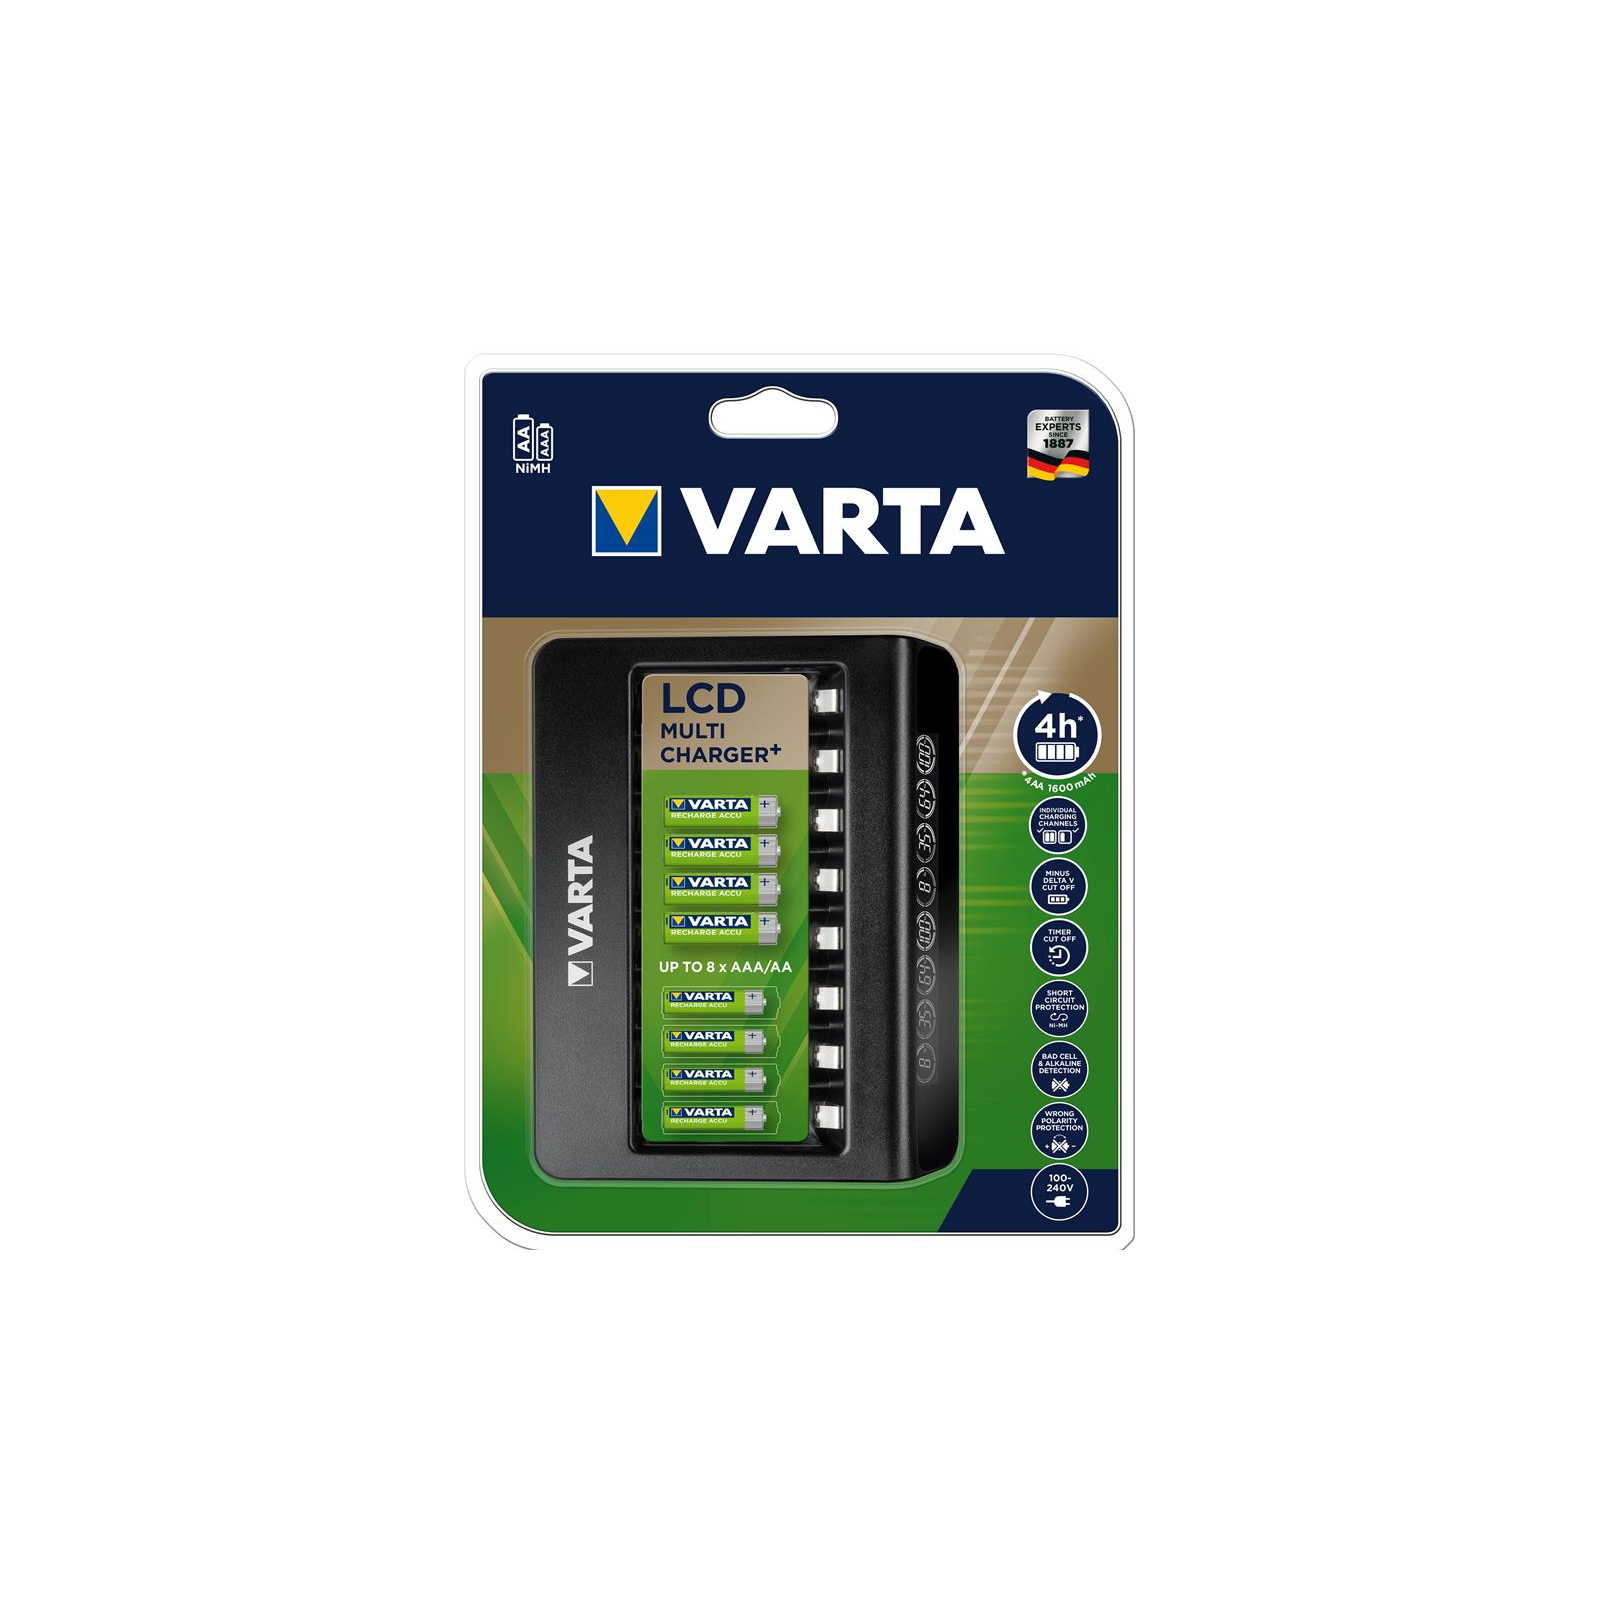 Зарядное устройство для аккумуляторов Varta LCD MULTI CHARGER PLUS (57681101401) изображение 4